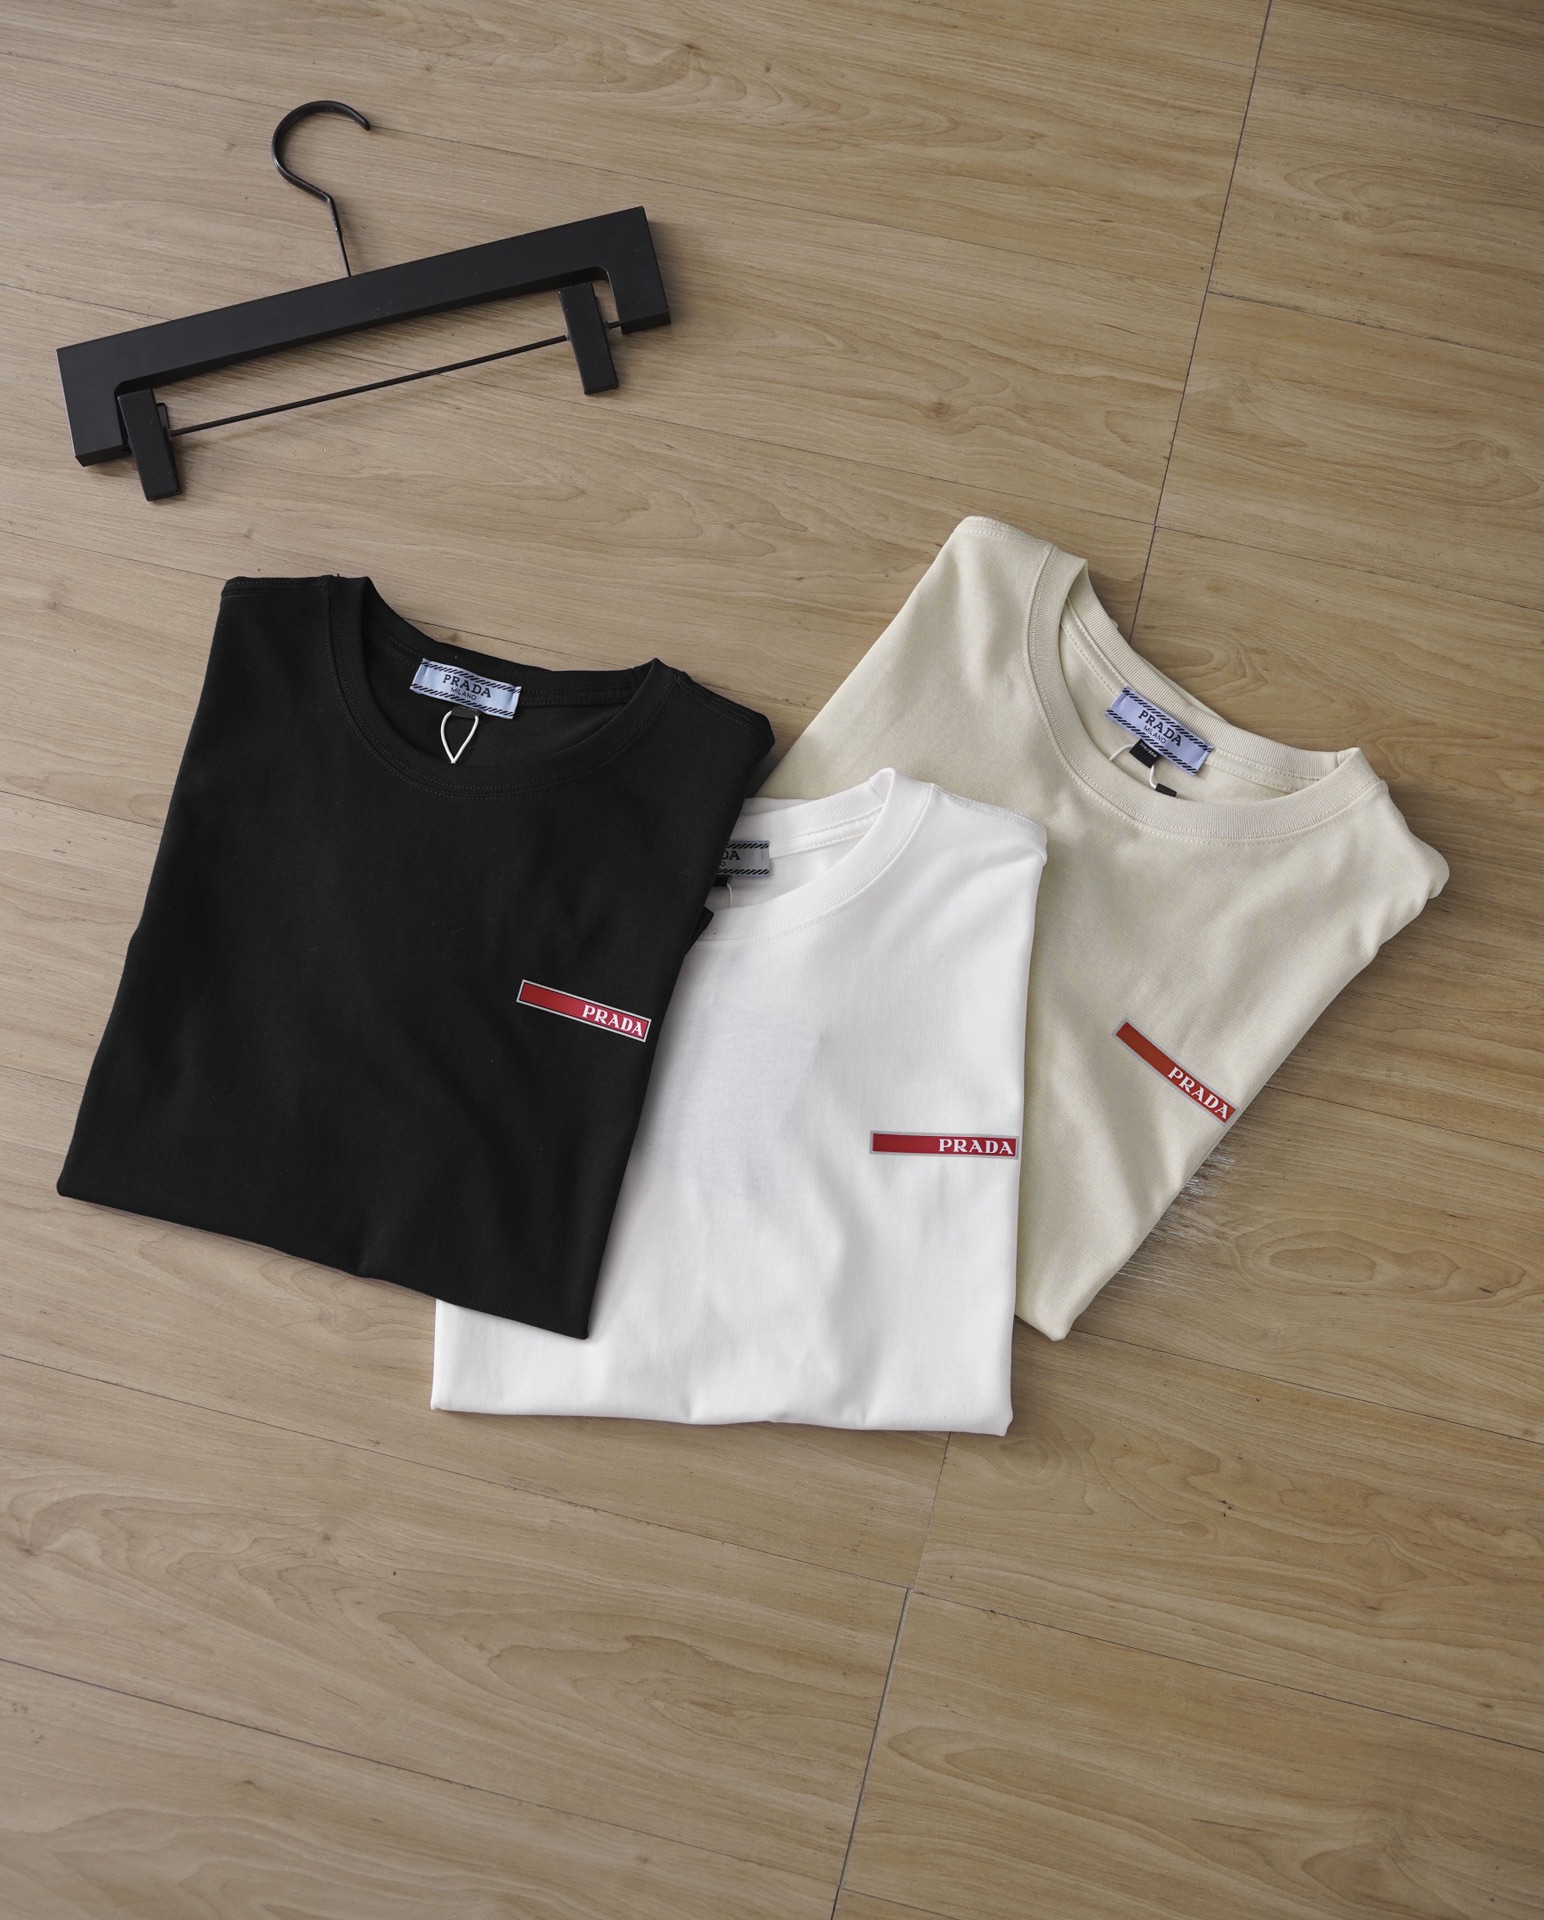 Prada Vêtements T-Shirt Noir Couleur kaki Blanc Unisexe Coton Série d’été Manches courtes